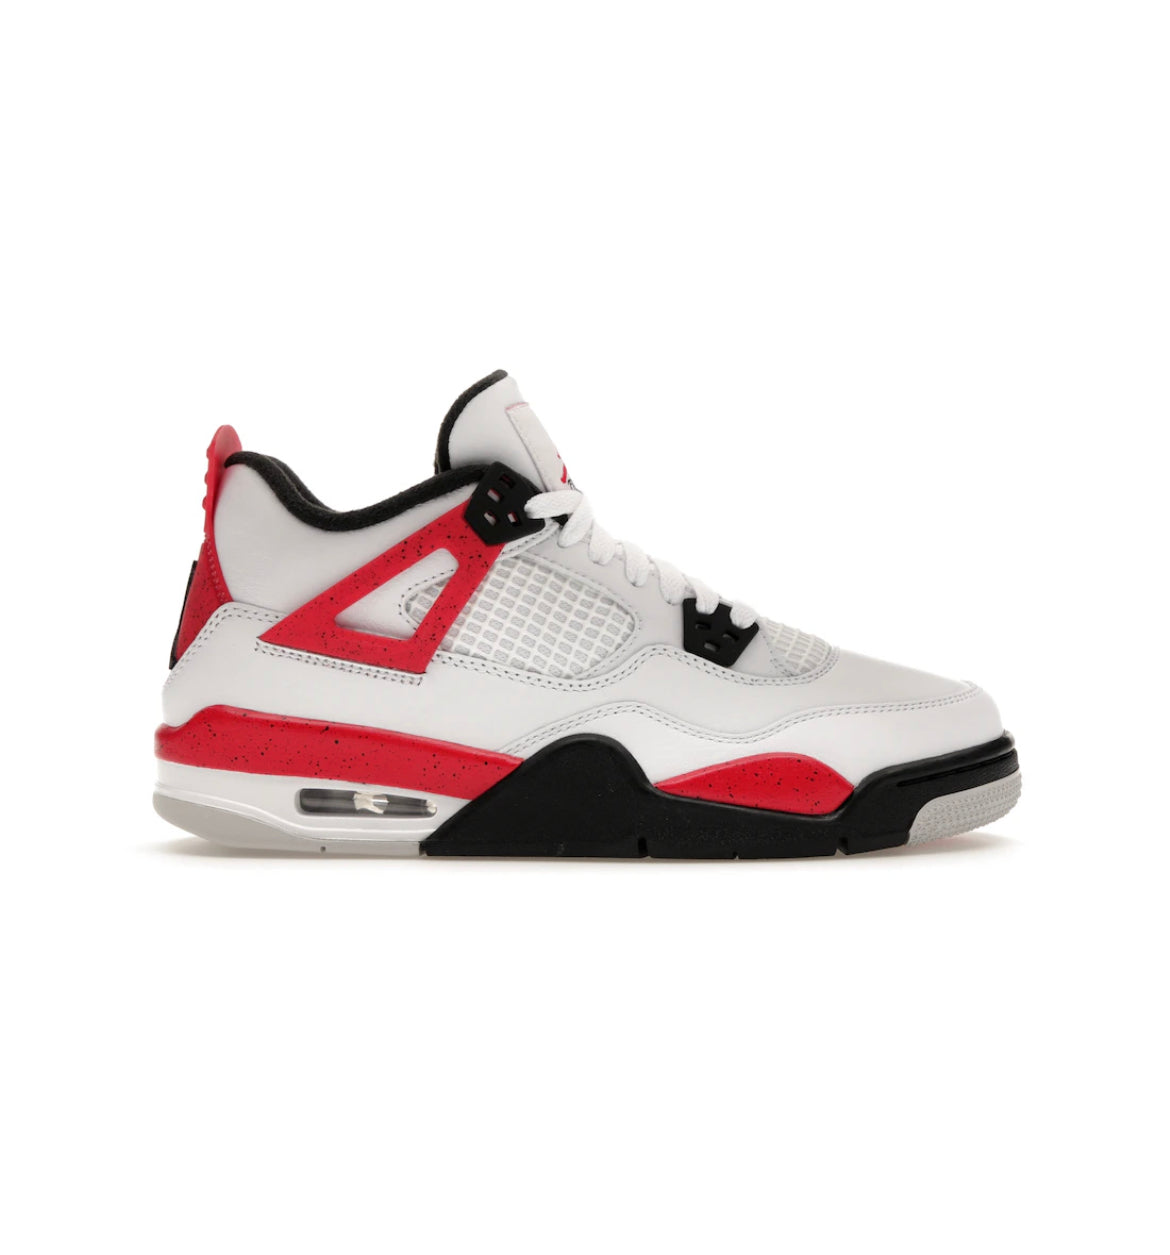 Jordan 4 Retro ‘Red Cement’ (GS) 408452-161